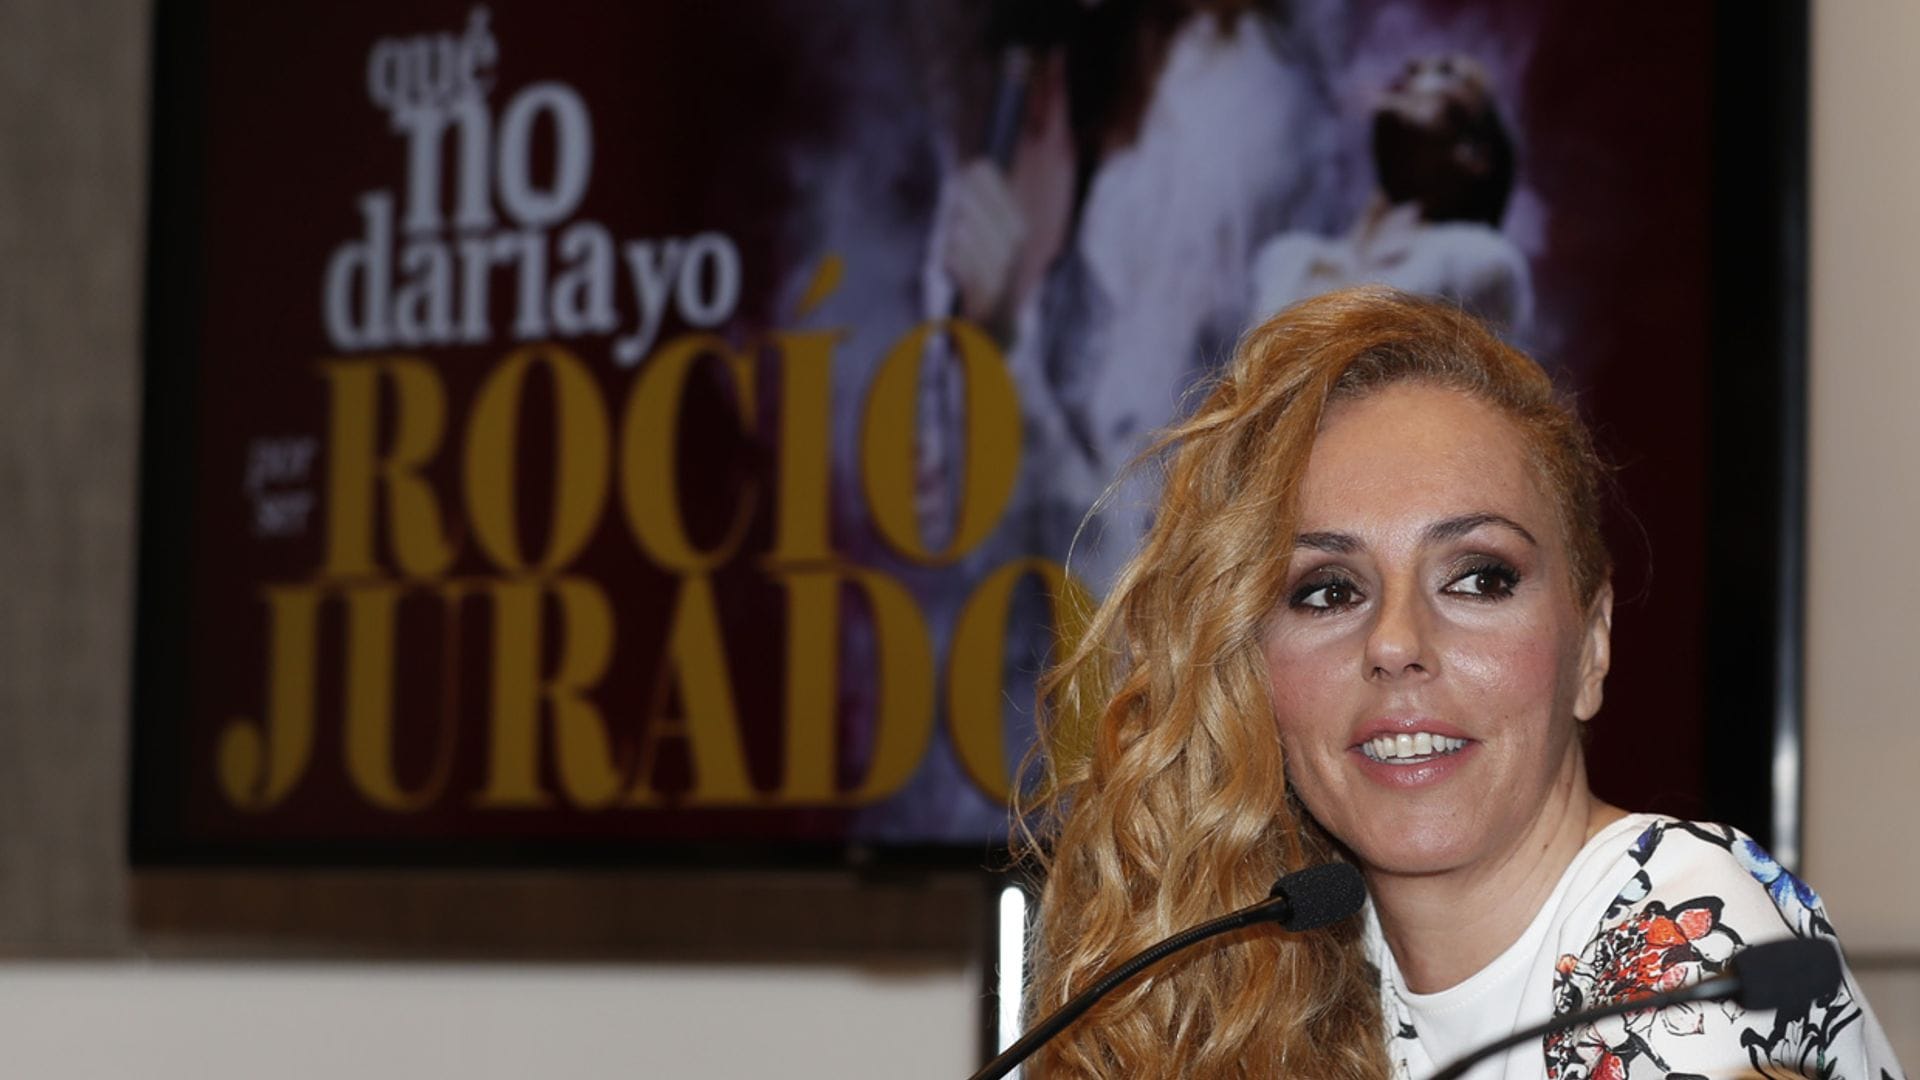 El espectáculo de Rocío Jurado se aplaza de nuevo en medio de la expectación provocada por el documental de Rocío Carrasco